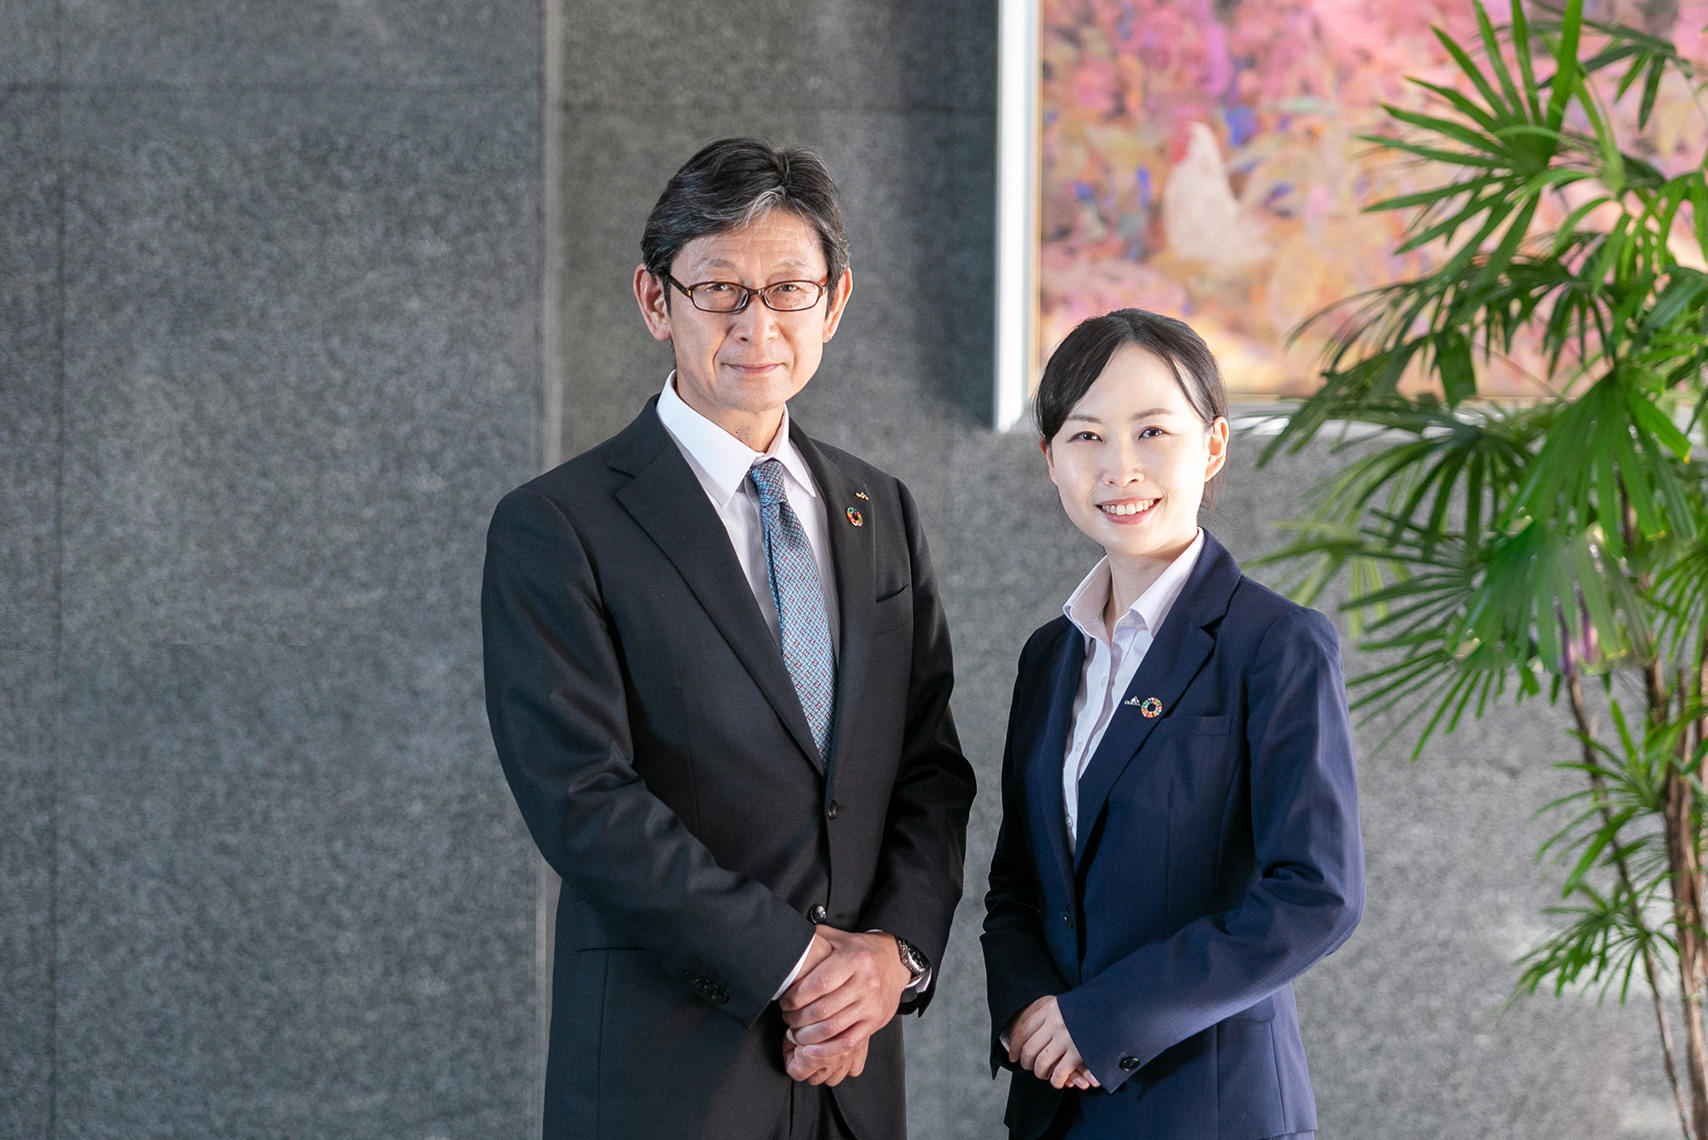 左右に立っている長野県信連の理事長と採用担当者